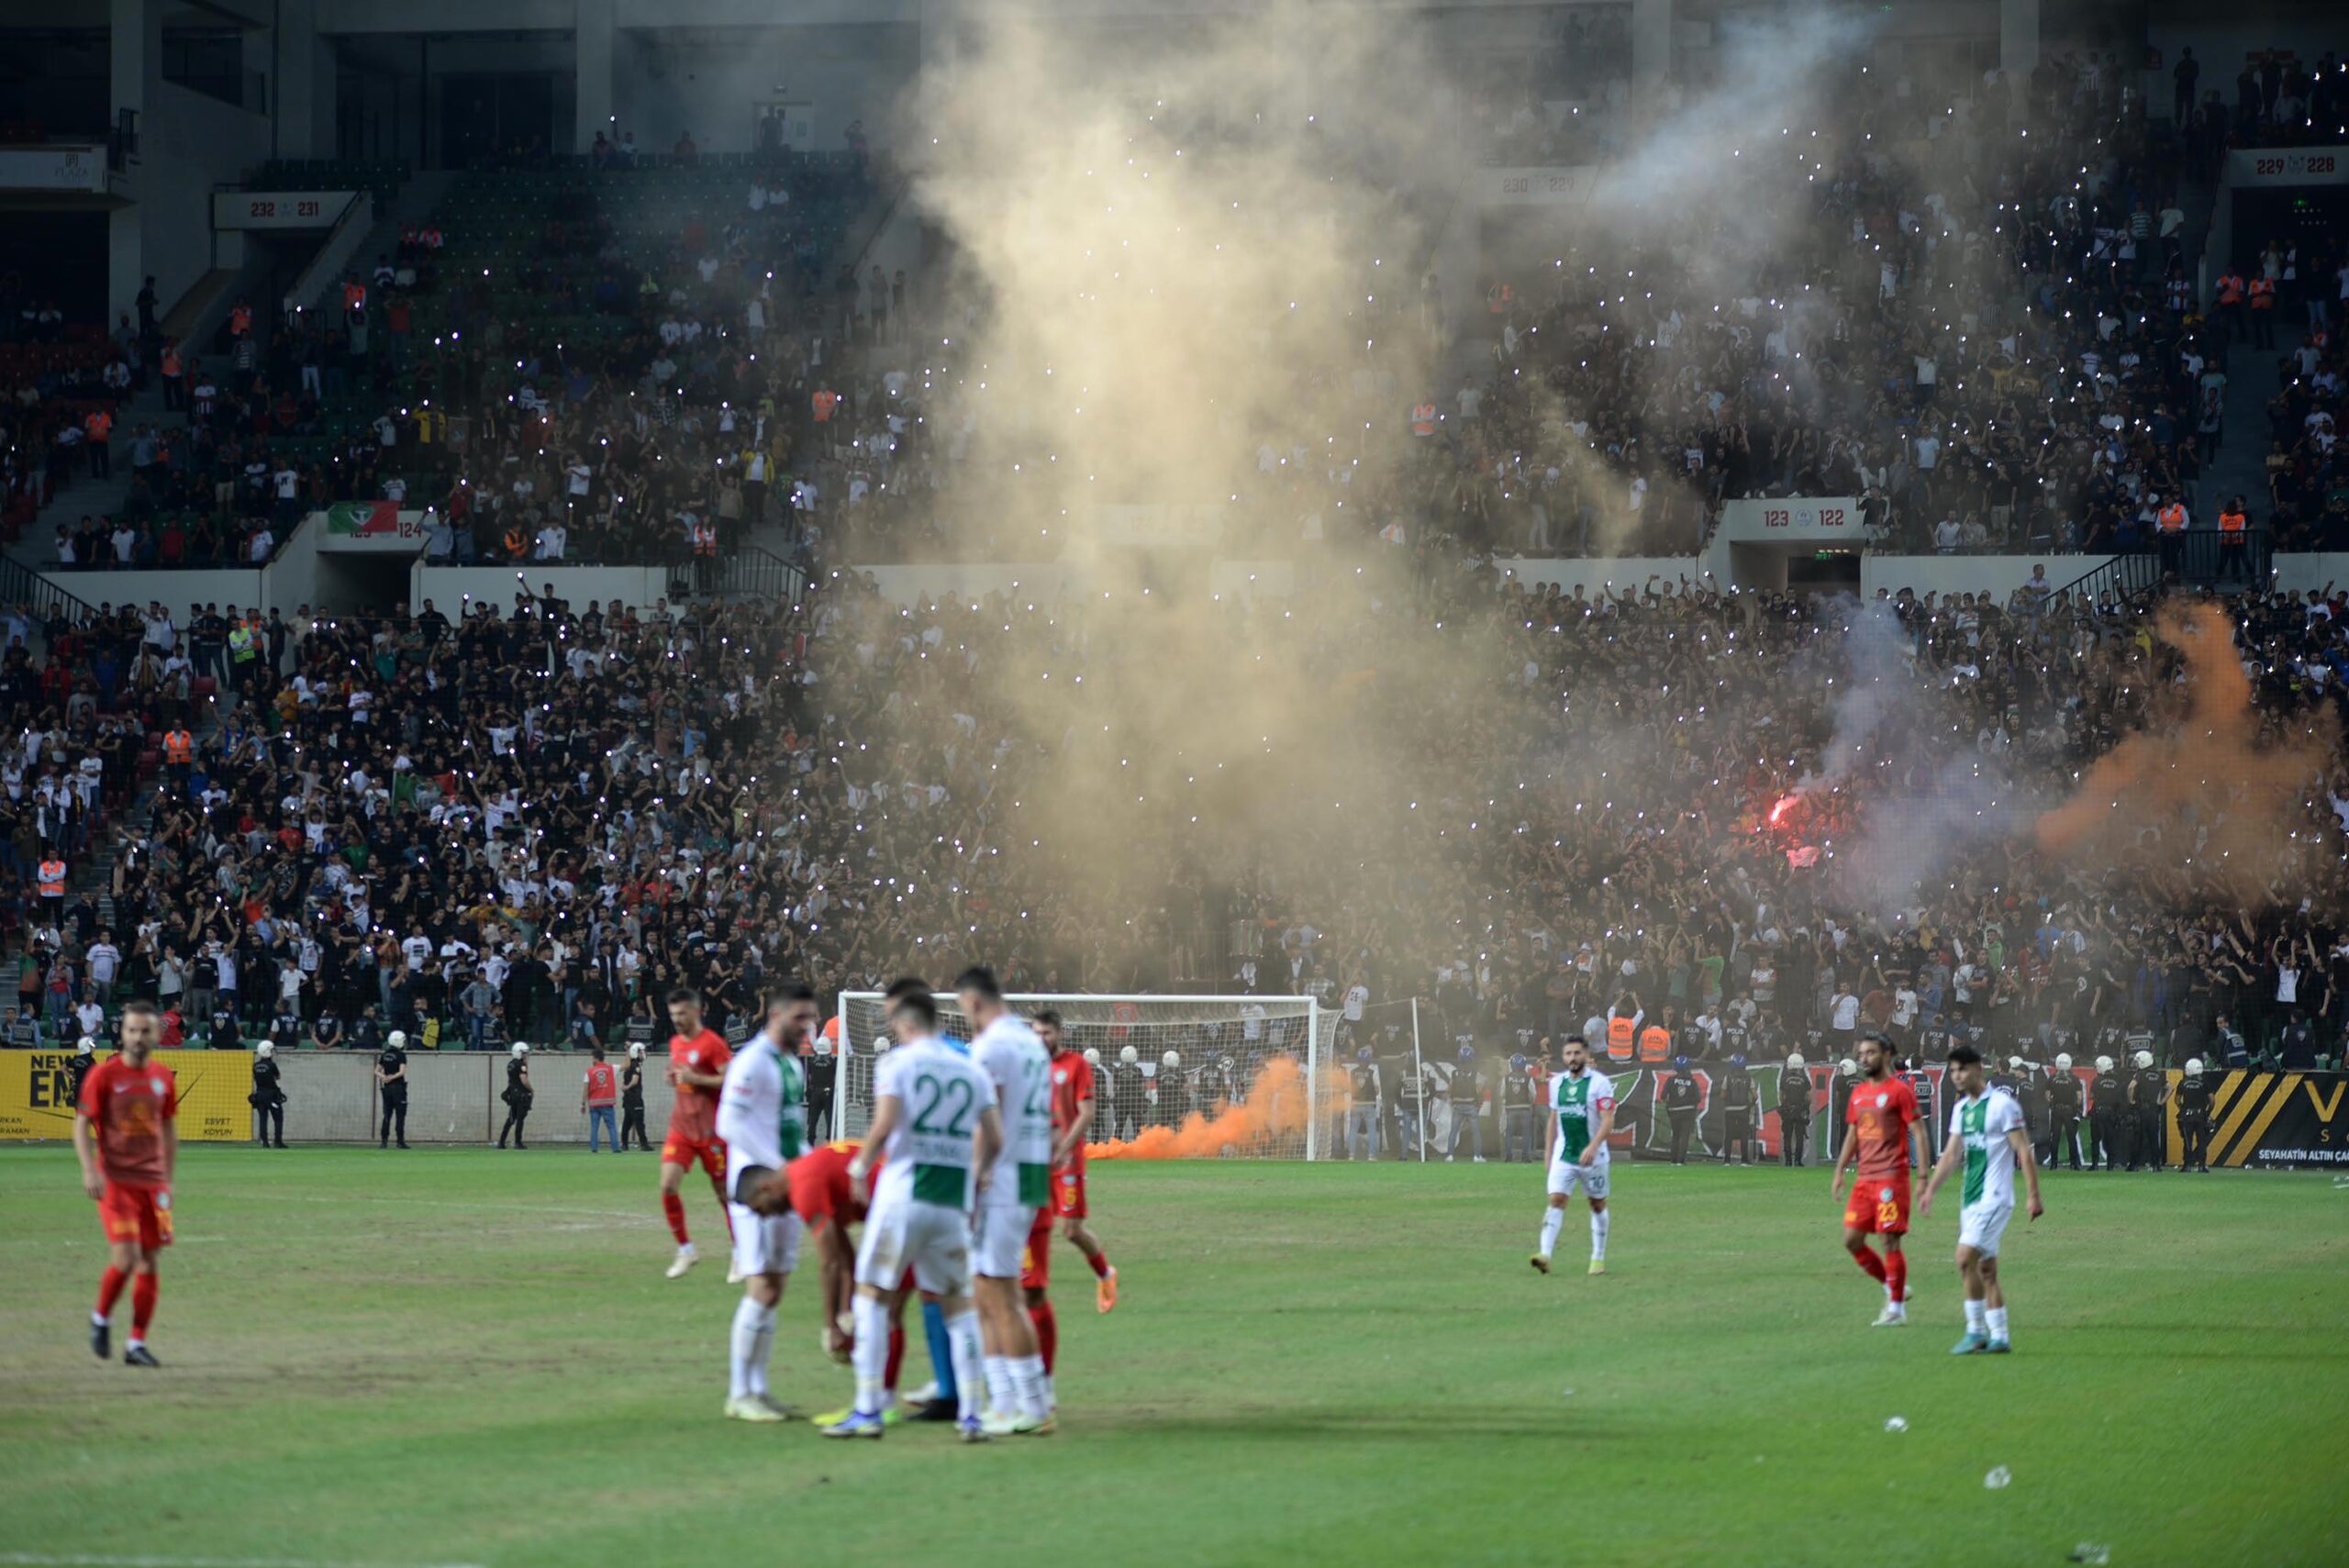 İçişleri’nden Amedspor-Bursaspor maçına ilişkin açıklama: Soruşturma başlatılmıştır